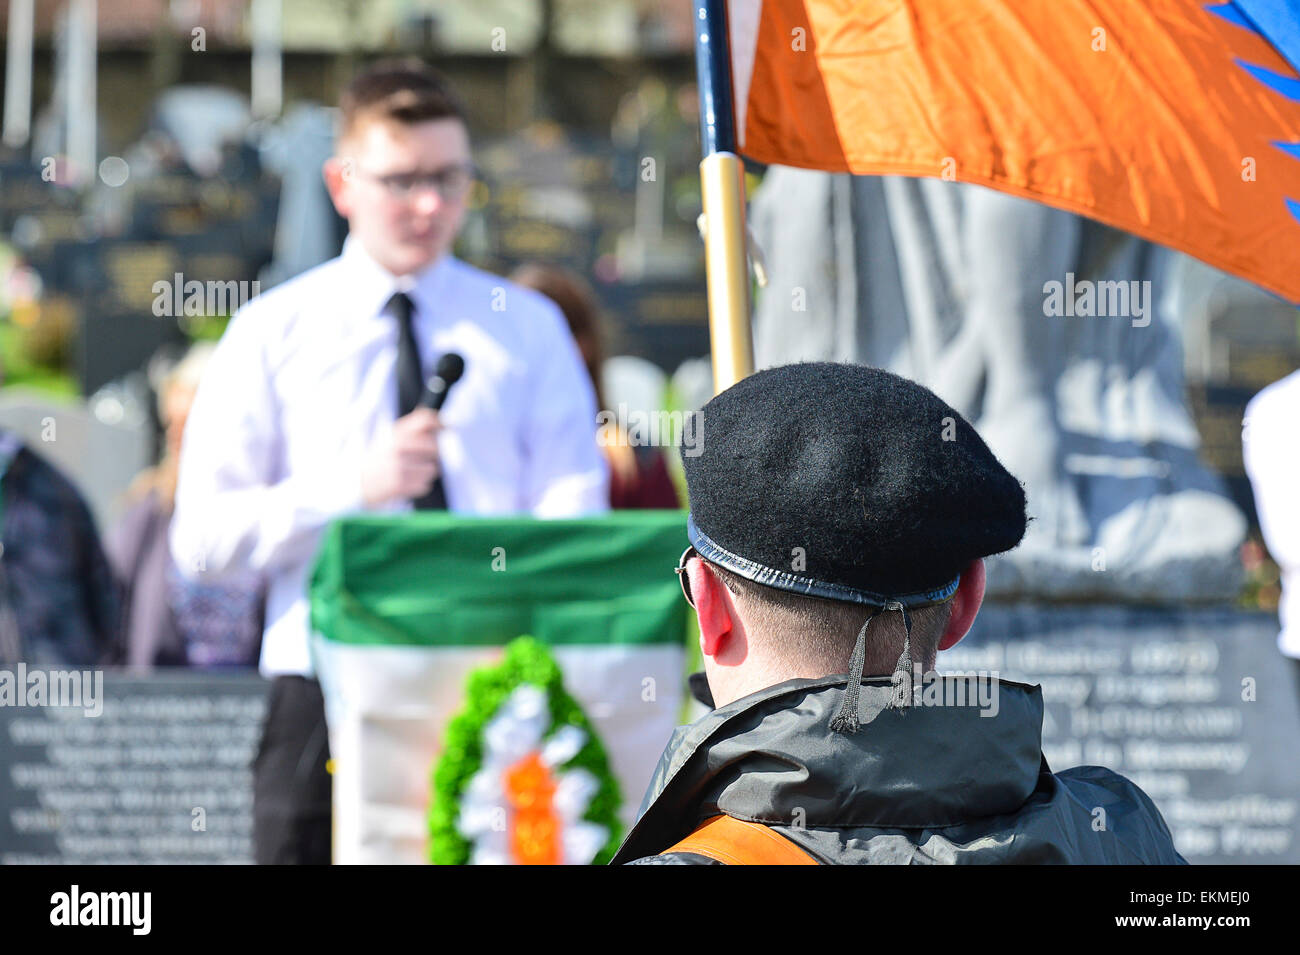 Parti républicain dissident lors d'une parade de couleurs 32CSM commémoration de l'Insurrection de Pâques 1916 à Derry, Londonderry Banque D'Images